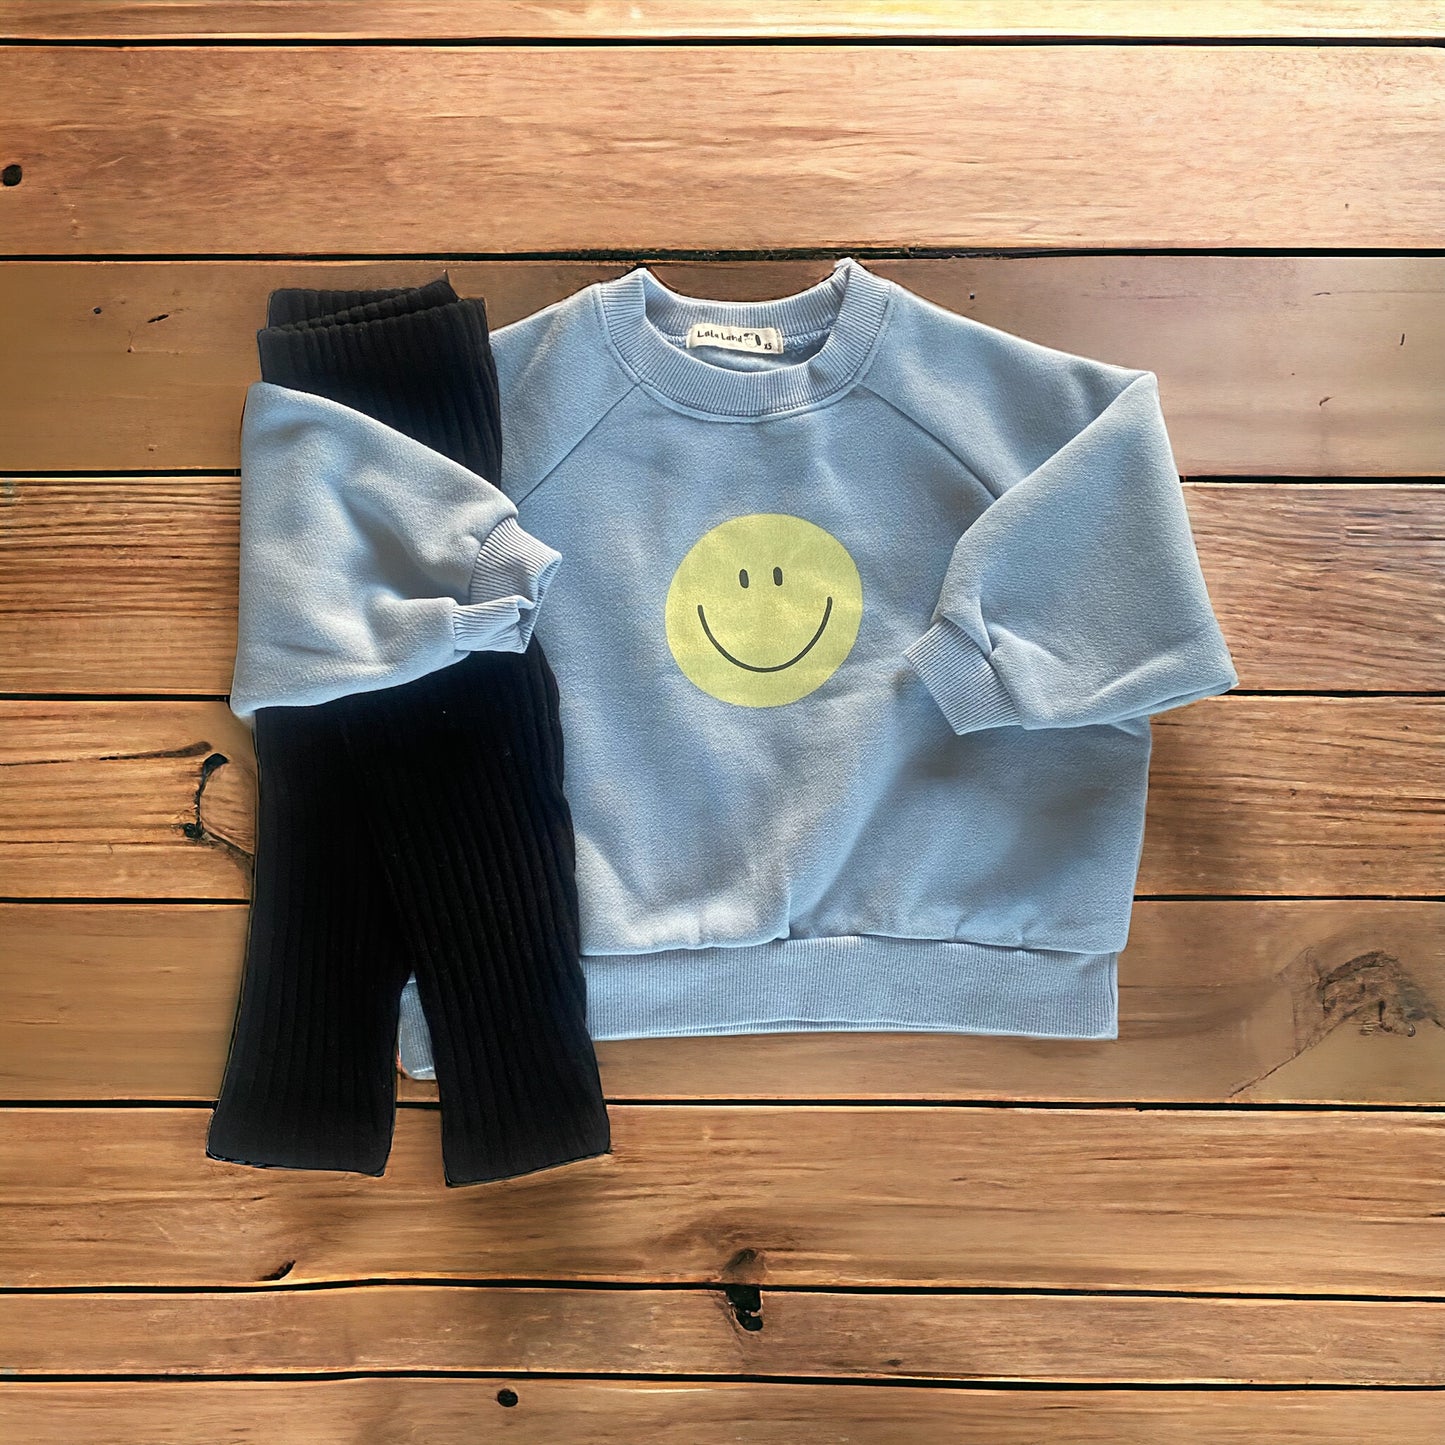 Saving Set - Smiley Sweater & Warm Leggings